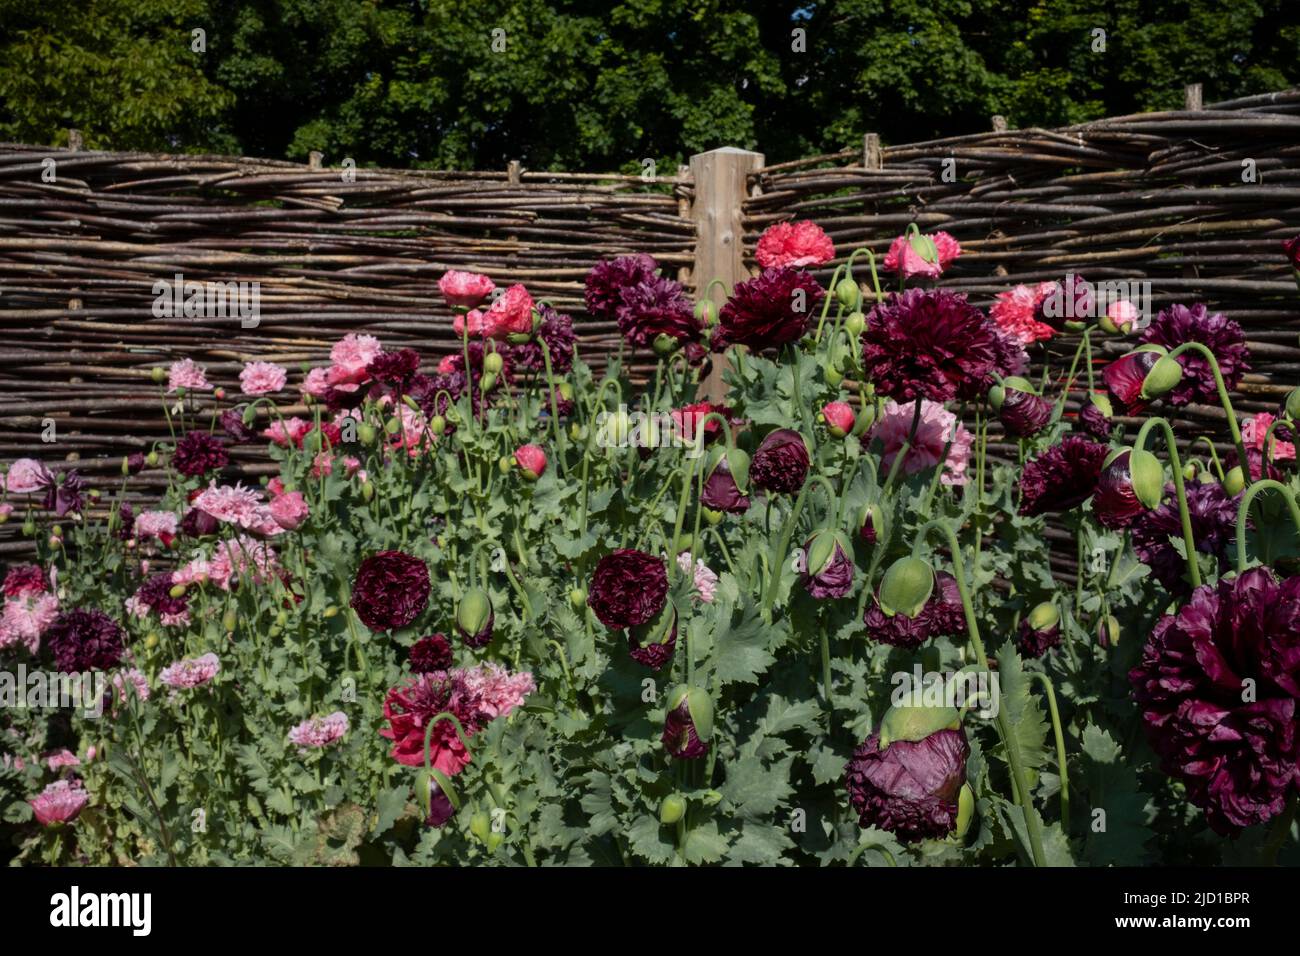 Rote und rosafarbene Mohnblumen im Sommer Grenzen an Holz verschachtelten Haselnuss Hürden Zaun englischen Garten, England Stockfoto